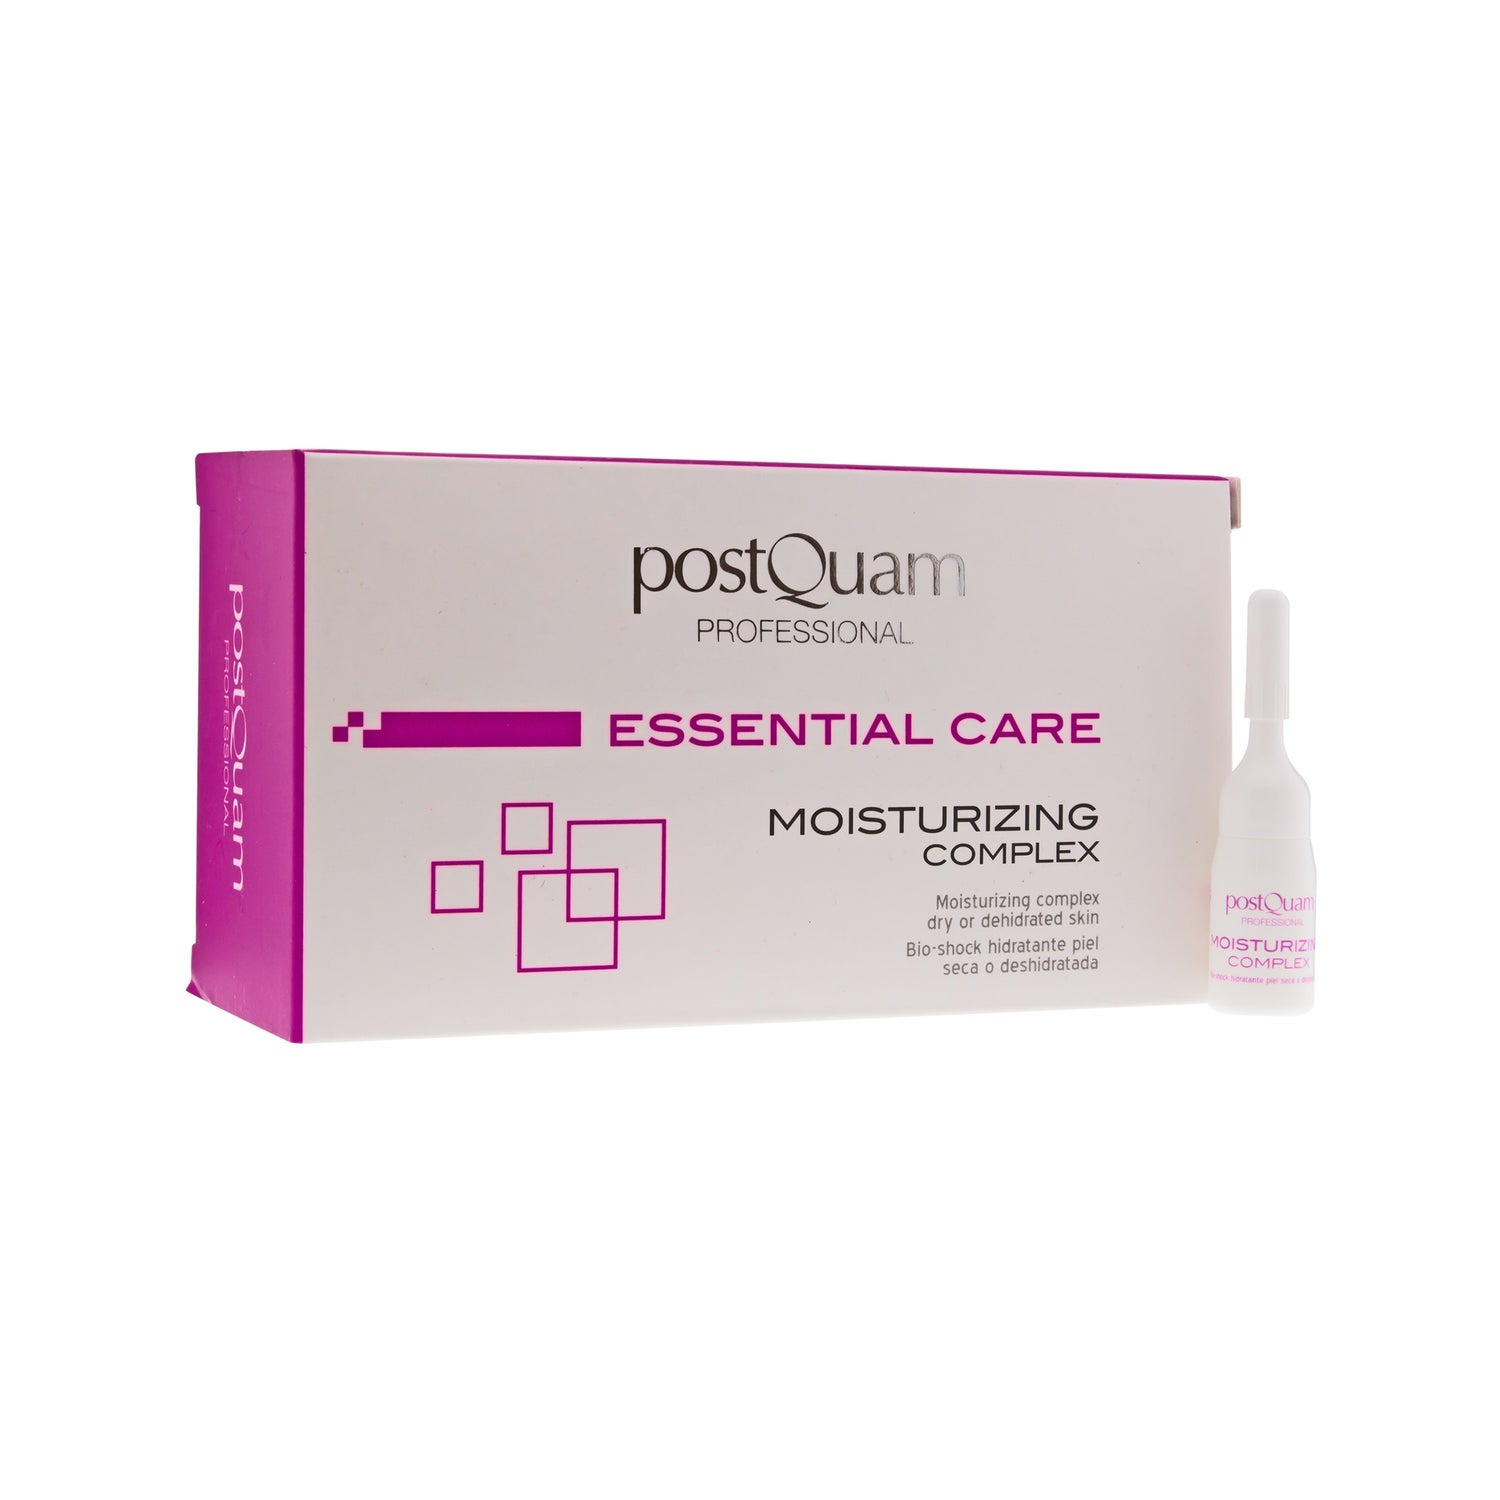 Postquam Bio-shock moisturising complex 12 vials | PromoFarma